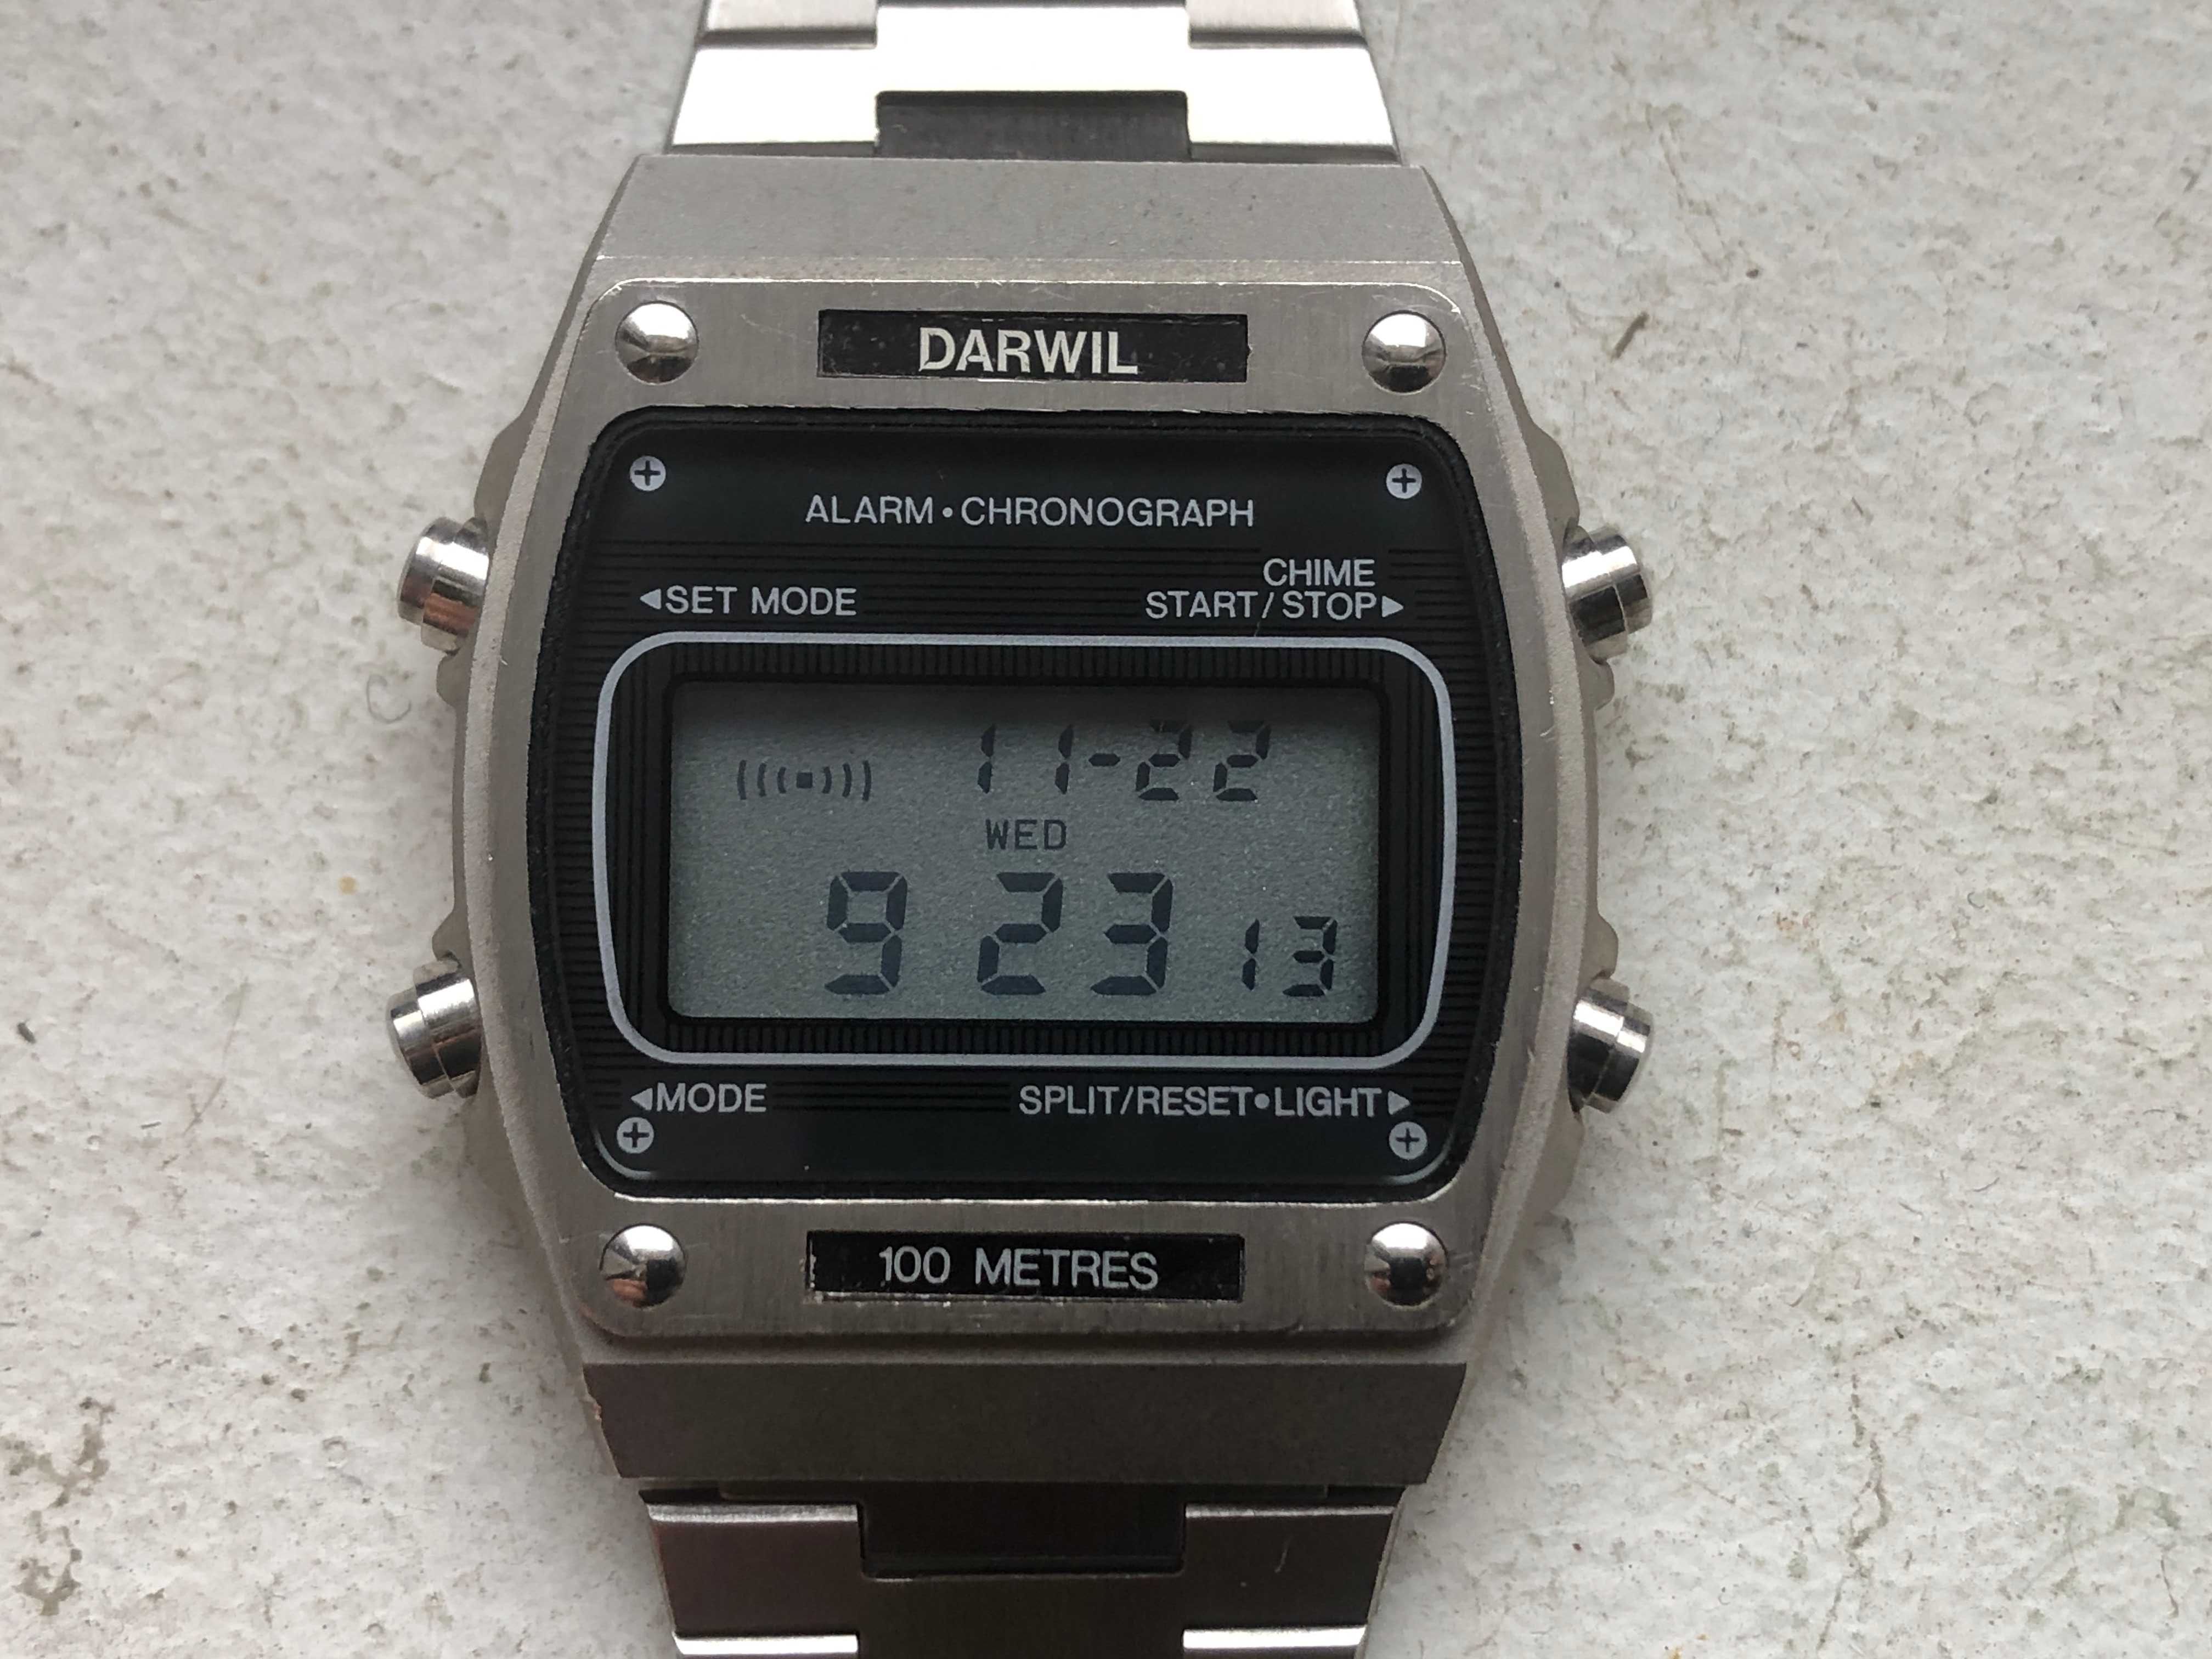 ретро LCD "DARWIL" alarm-chronograph - 1980г. - МИНТ